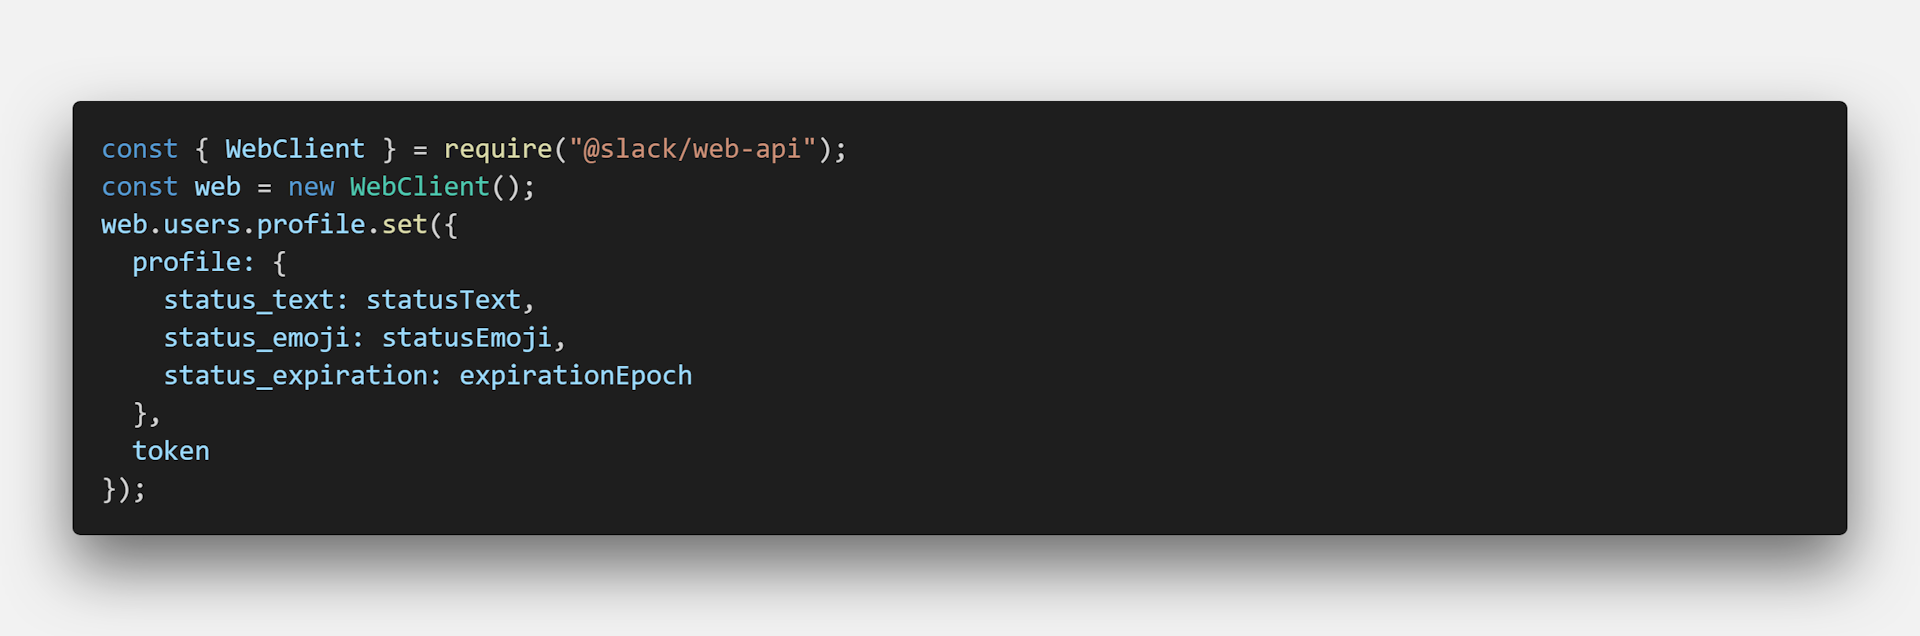 Slack API code